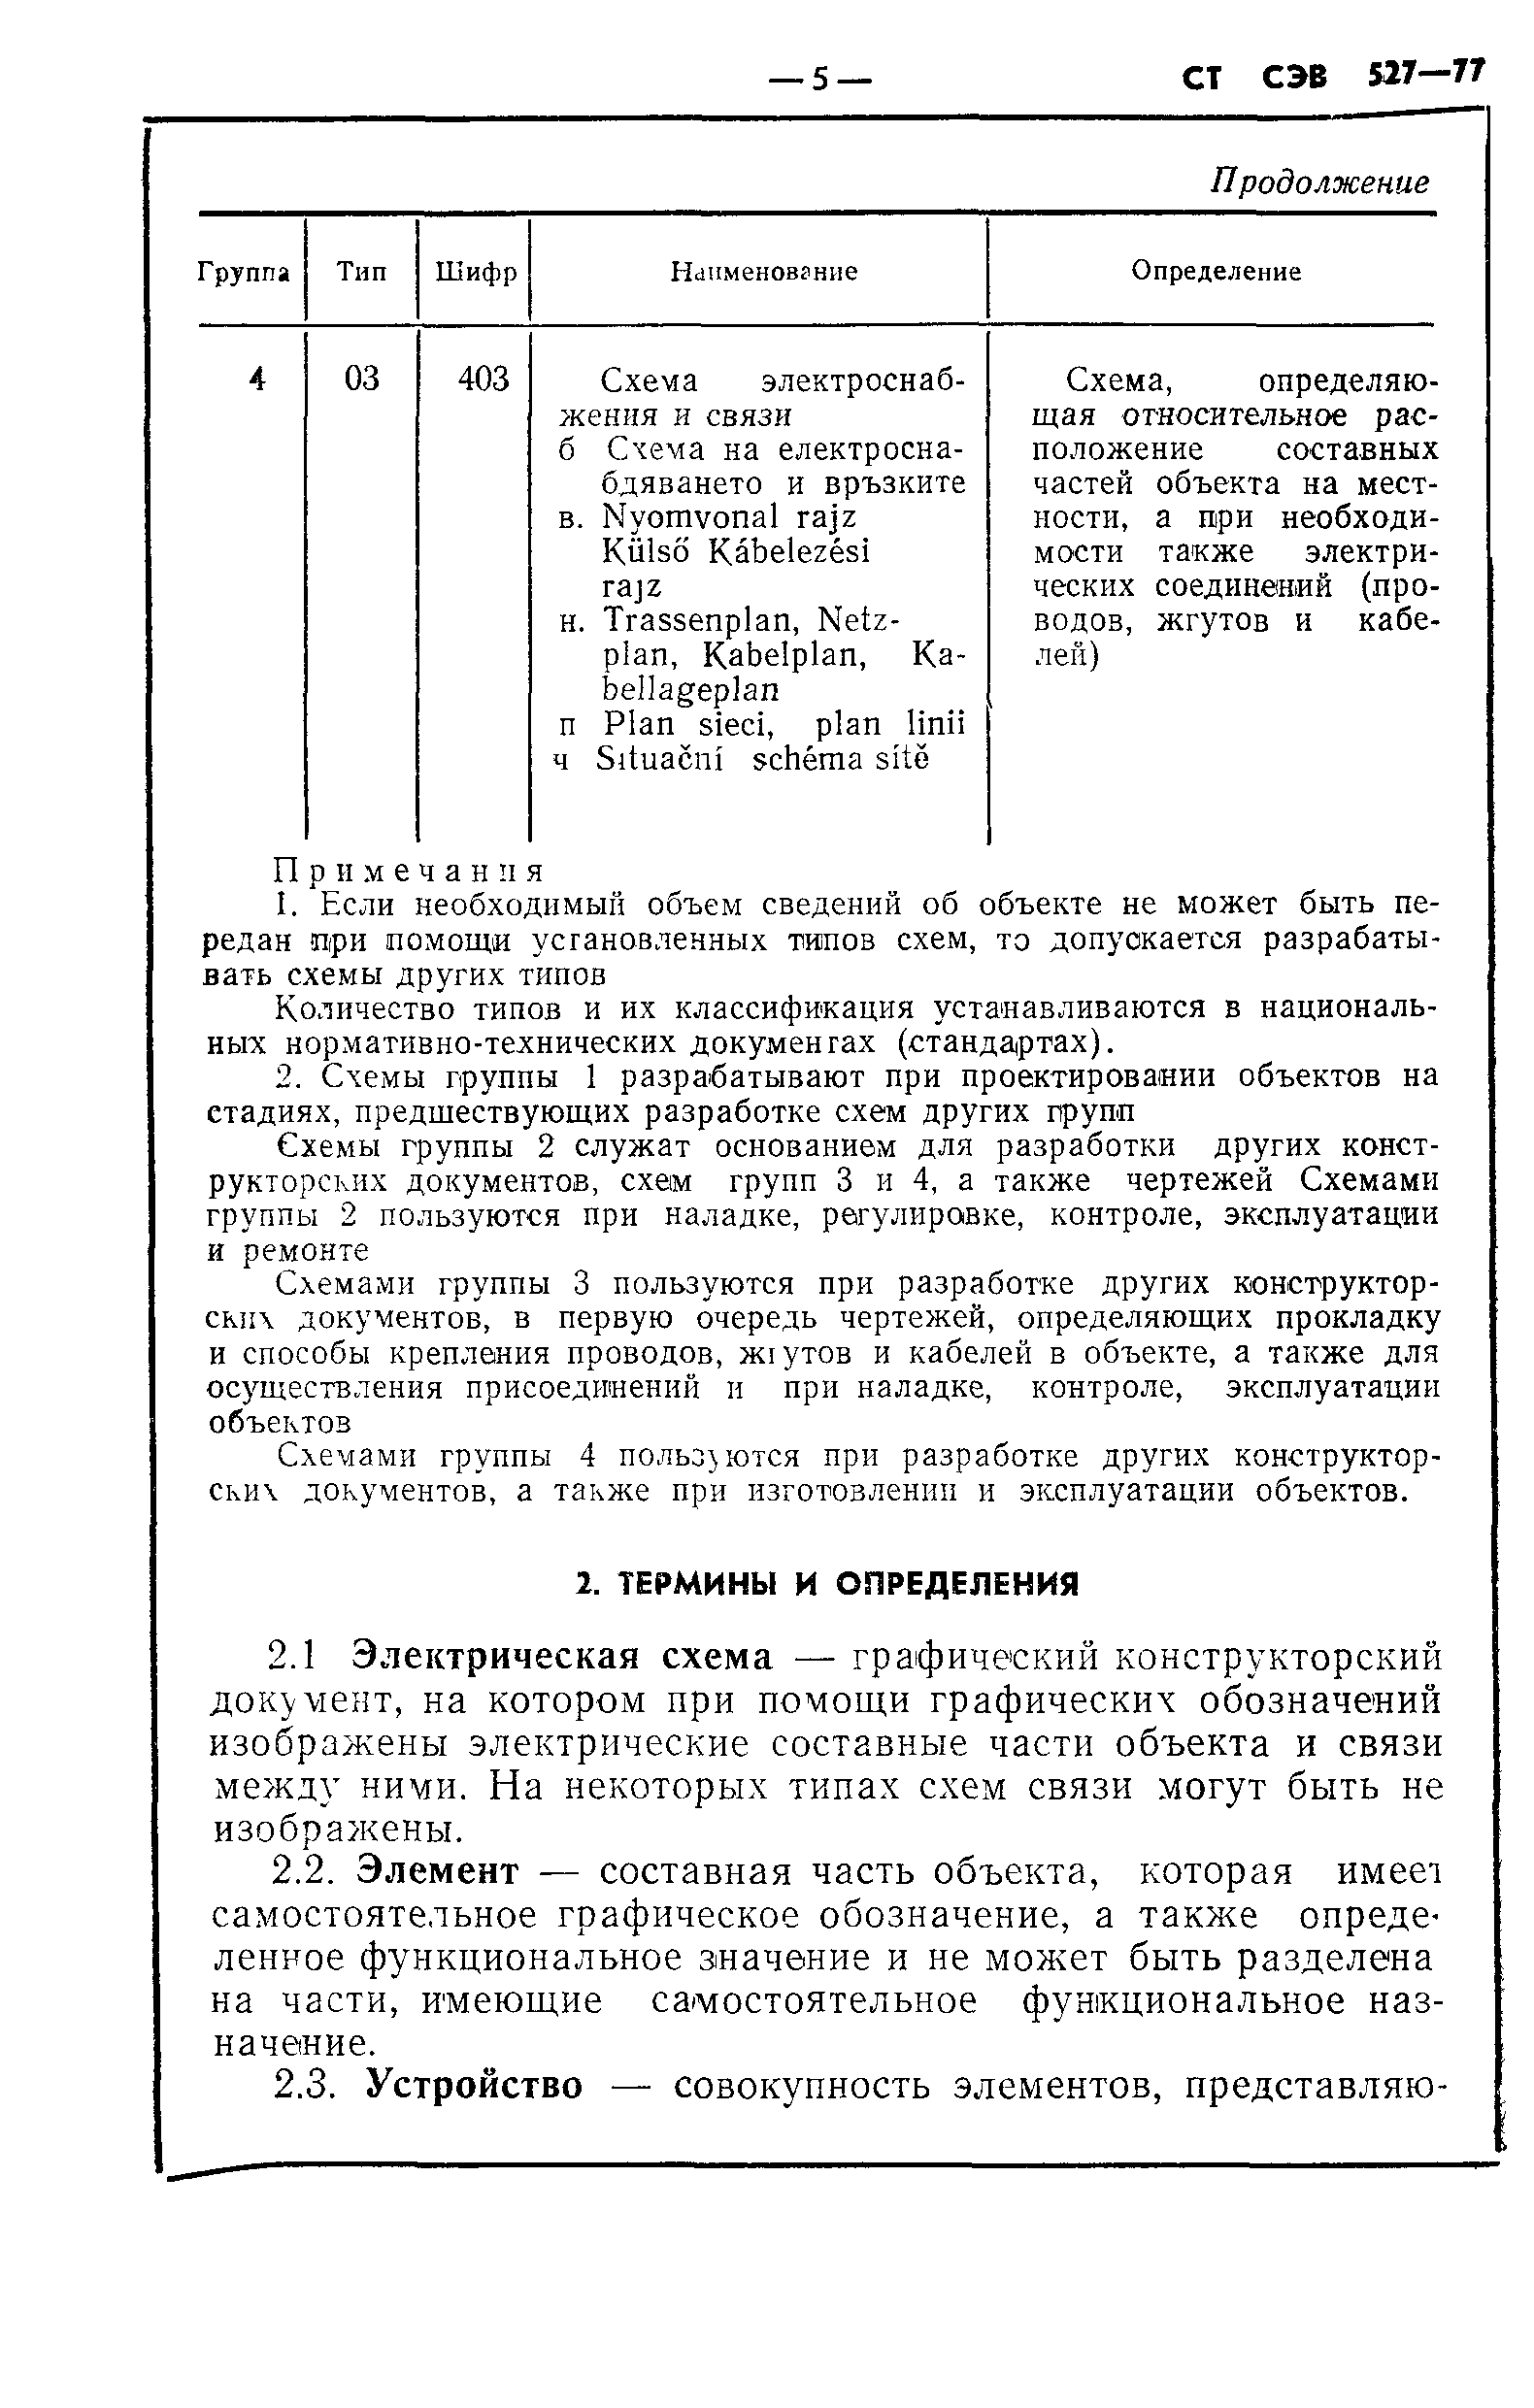 СТ СЭВ 527-77